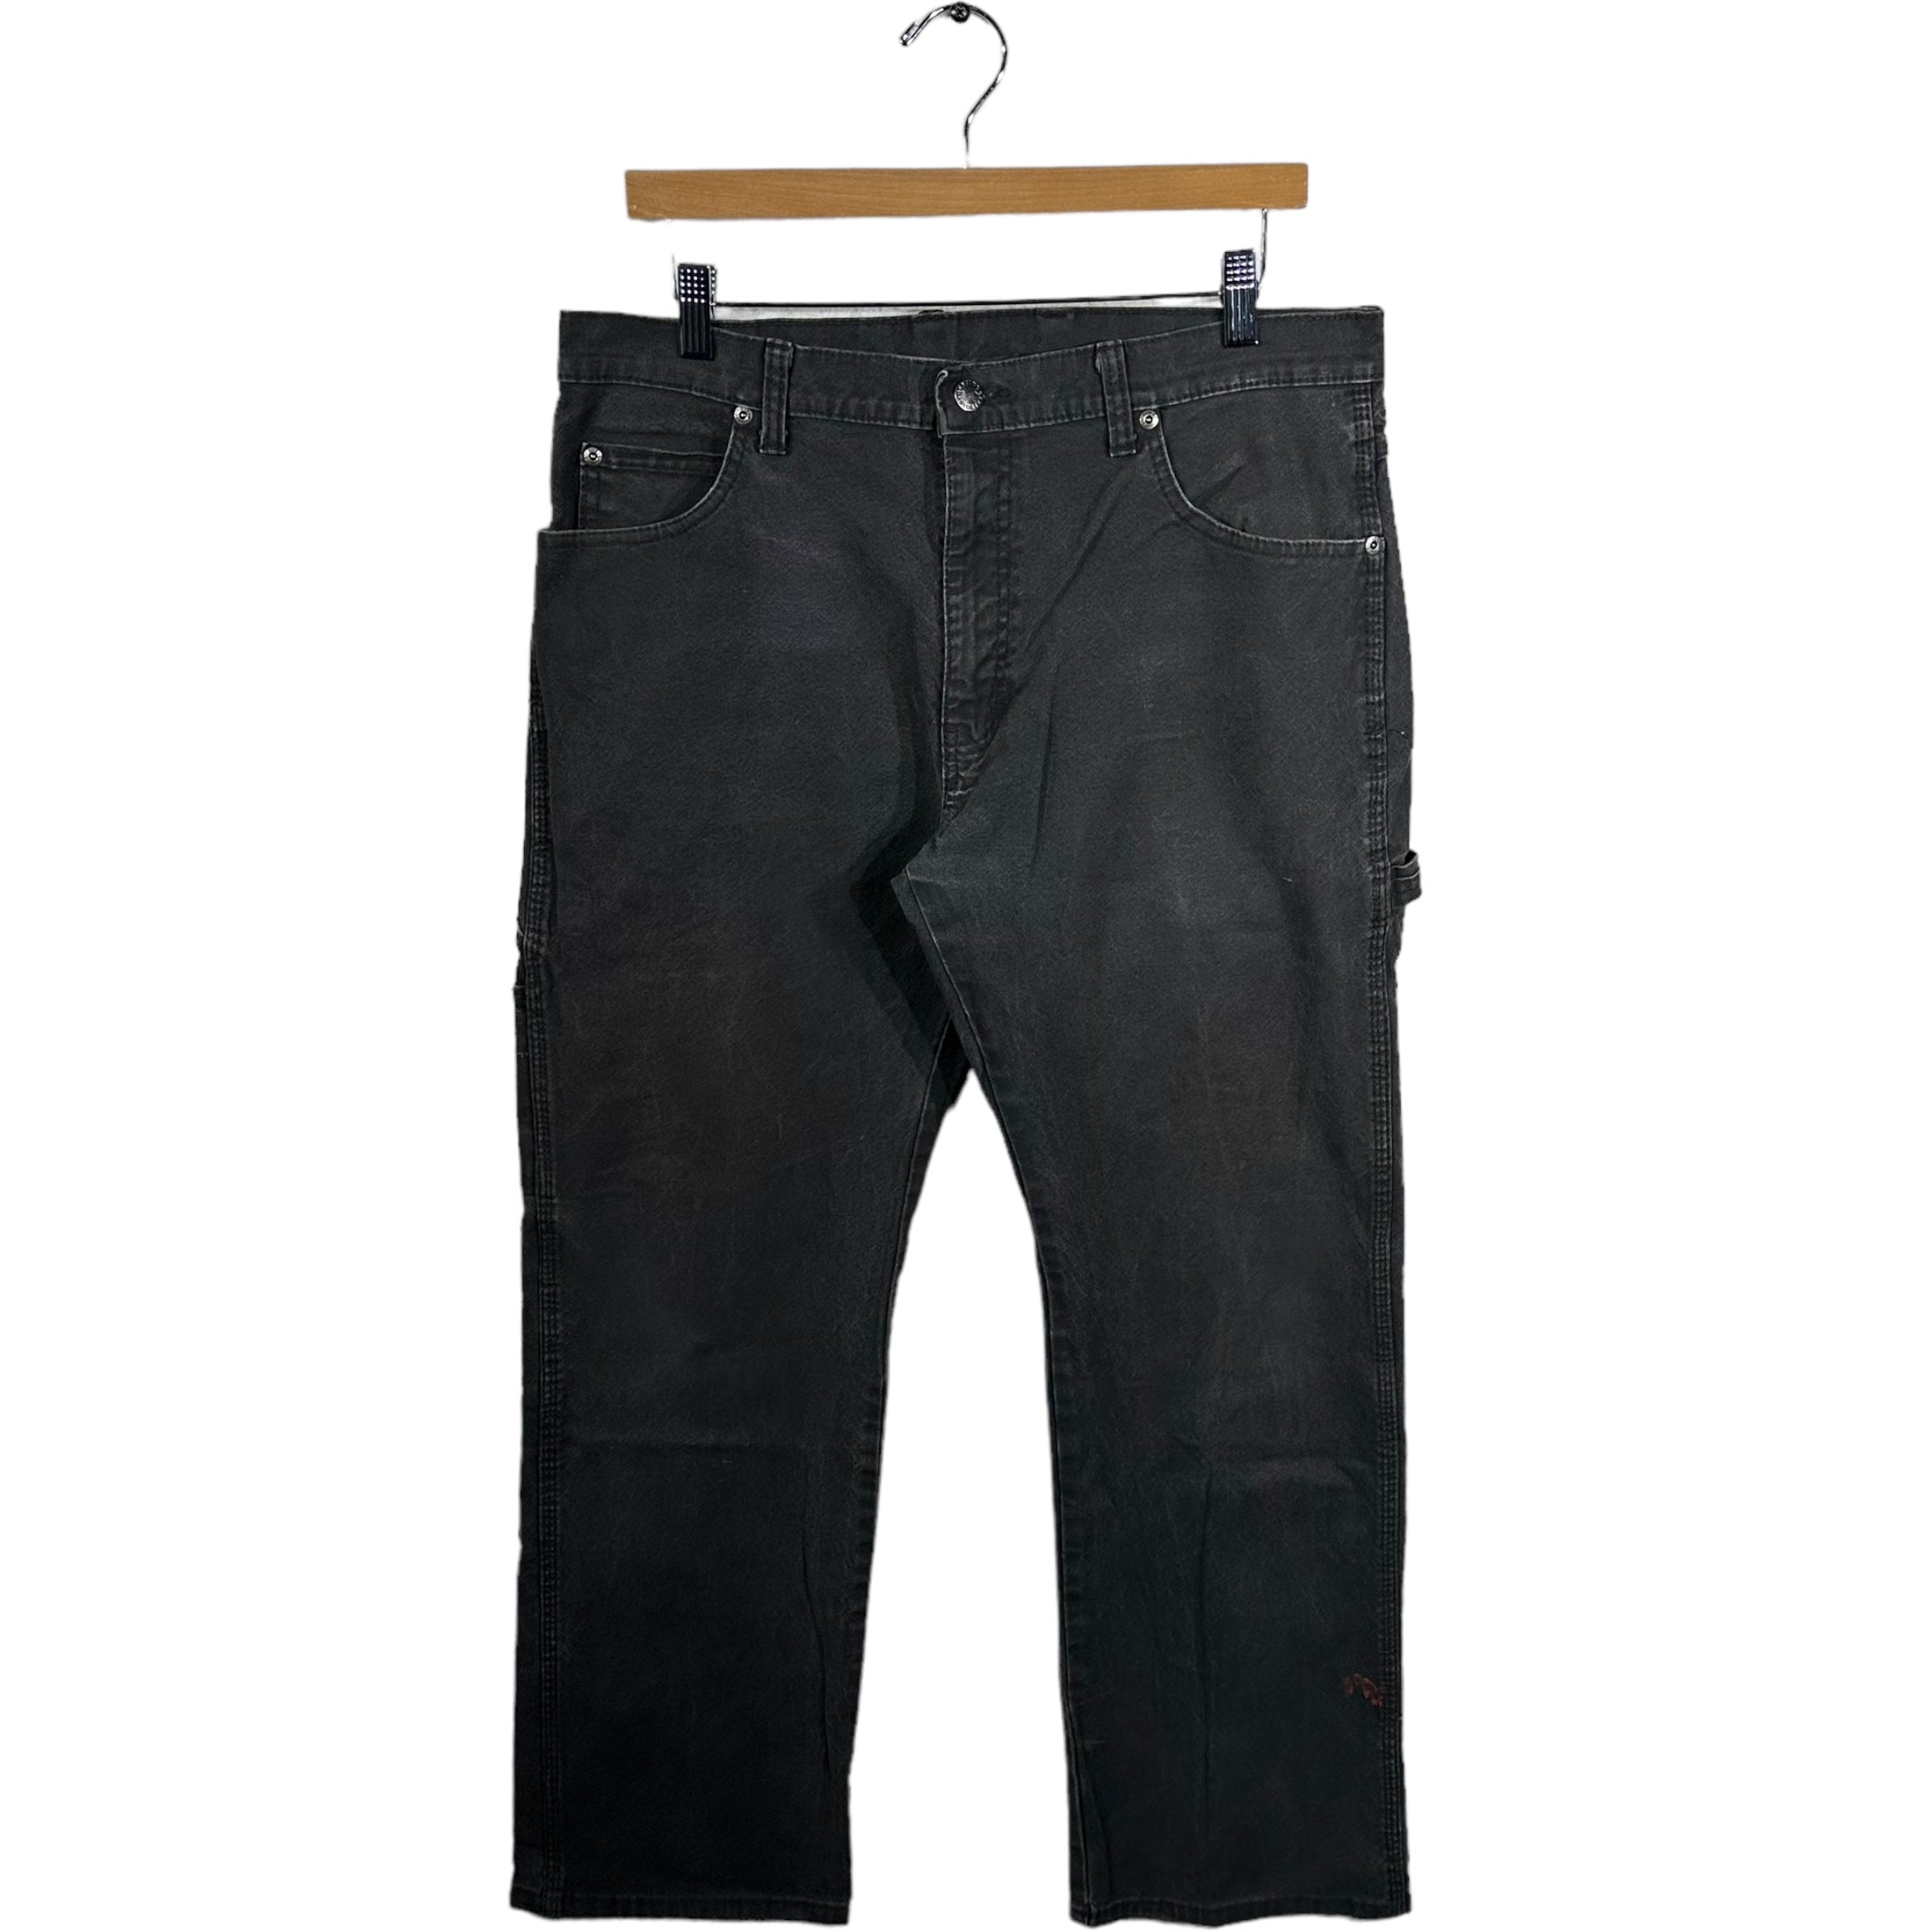 Vintage Genuine Dickies Carpenter Pants